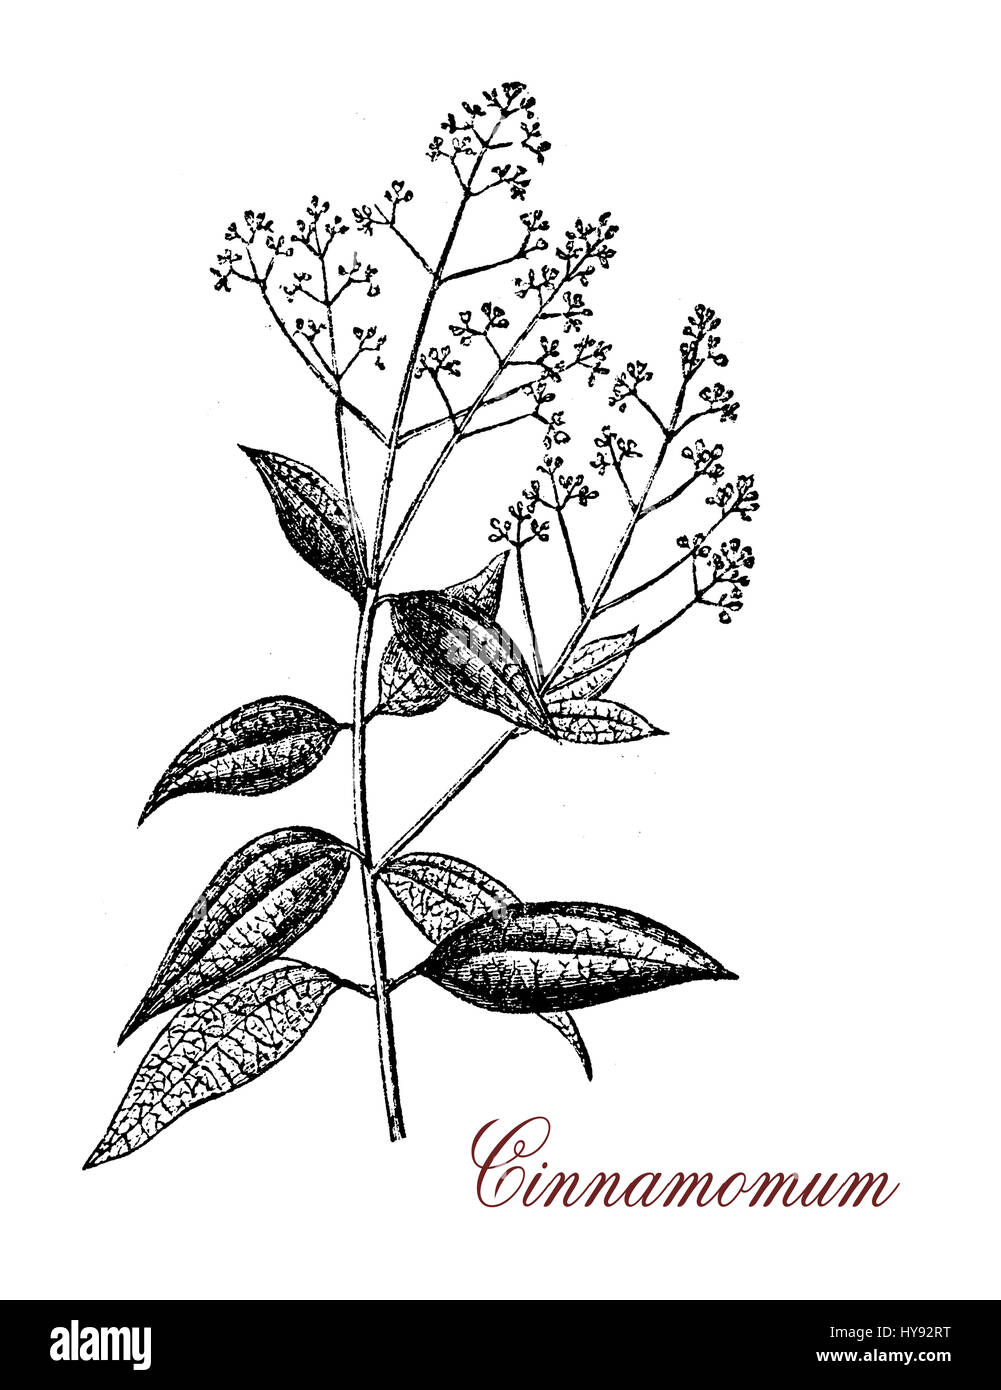 Vintage Gravur Cinnamomum, einer aromatischen immergrüner Baum oder Strauch  mit glänzenden Blättern. Ein Gewürz (Zimt) ergibt sich aus der inneren  Rinde in süßen und herzhaften Speisen verwendet Stockfotografie - Alamy